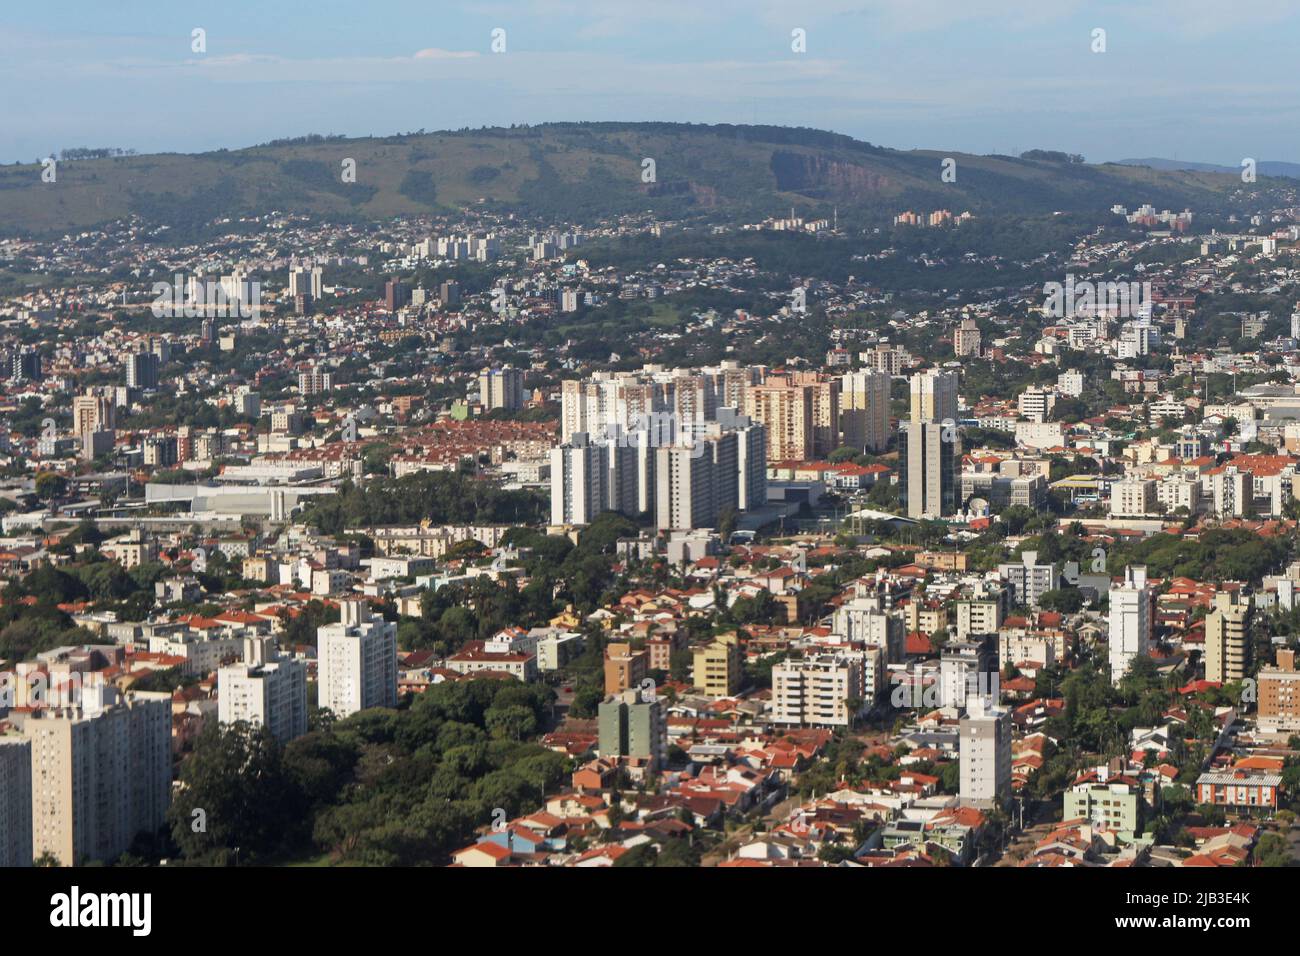 Aerial views of urban centers, Sao Paulo - Brazil Stock Photo